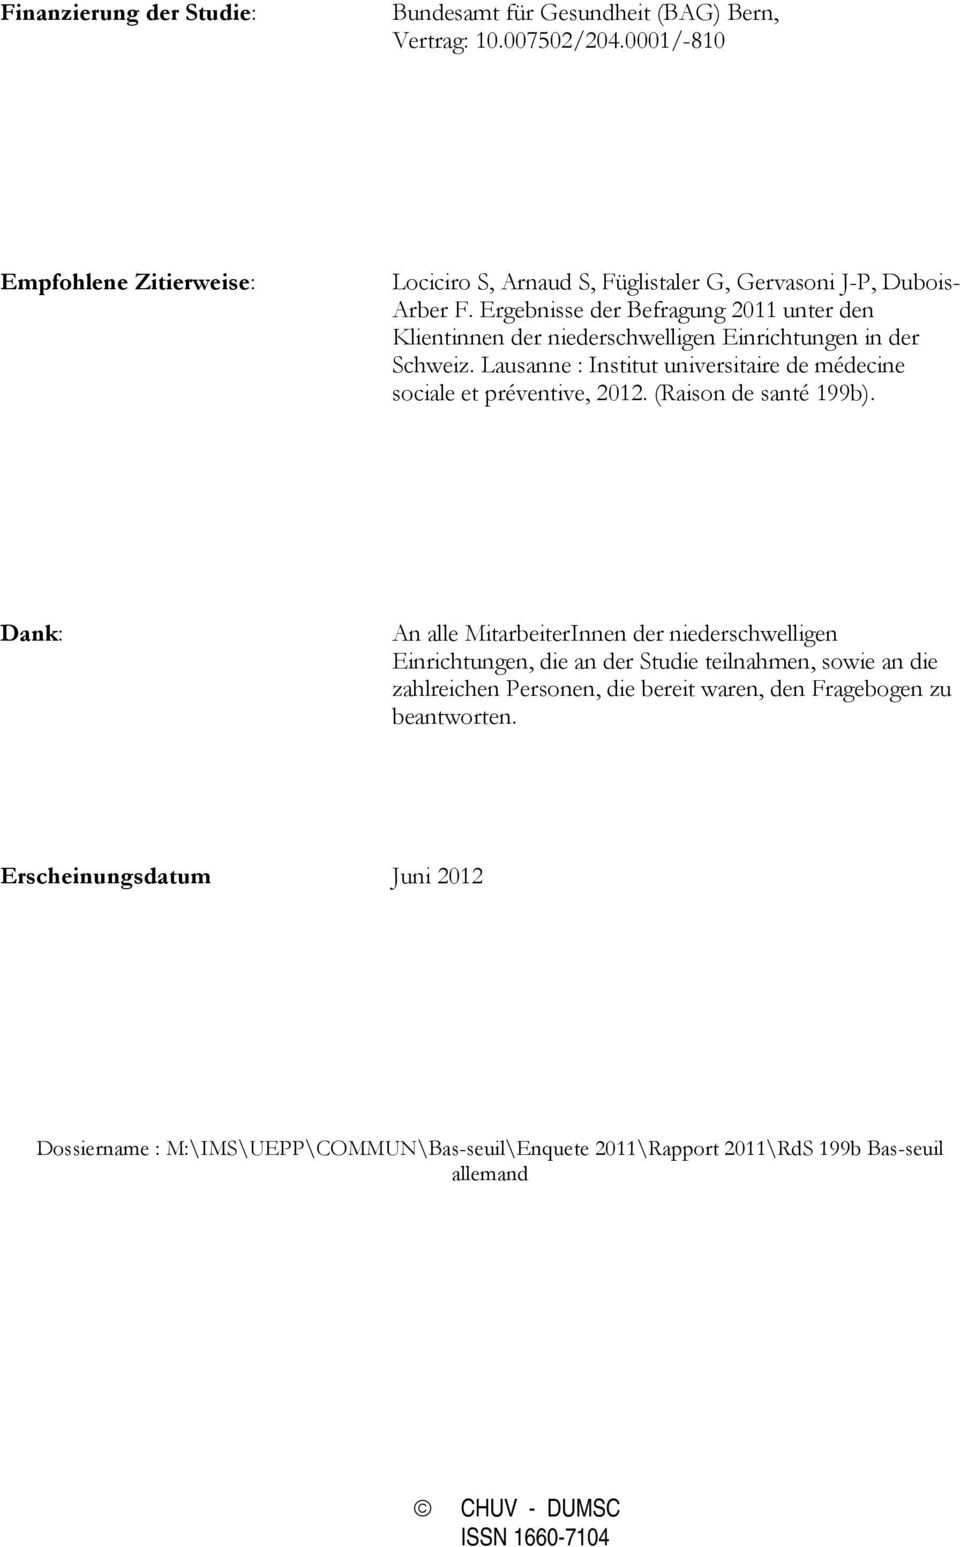 Ergebnisse der Befragung 2011 unter den Klientinnen der niederschwelligen Einrichtungen in der Schweiz. Lausanne : Institut universitaire de médecine sociale et préventive, 2012.